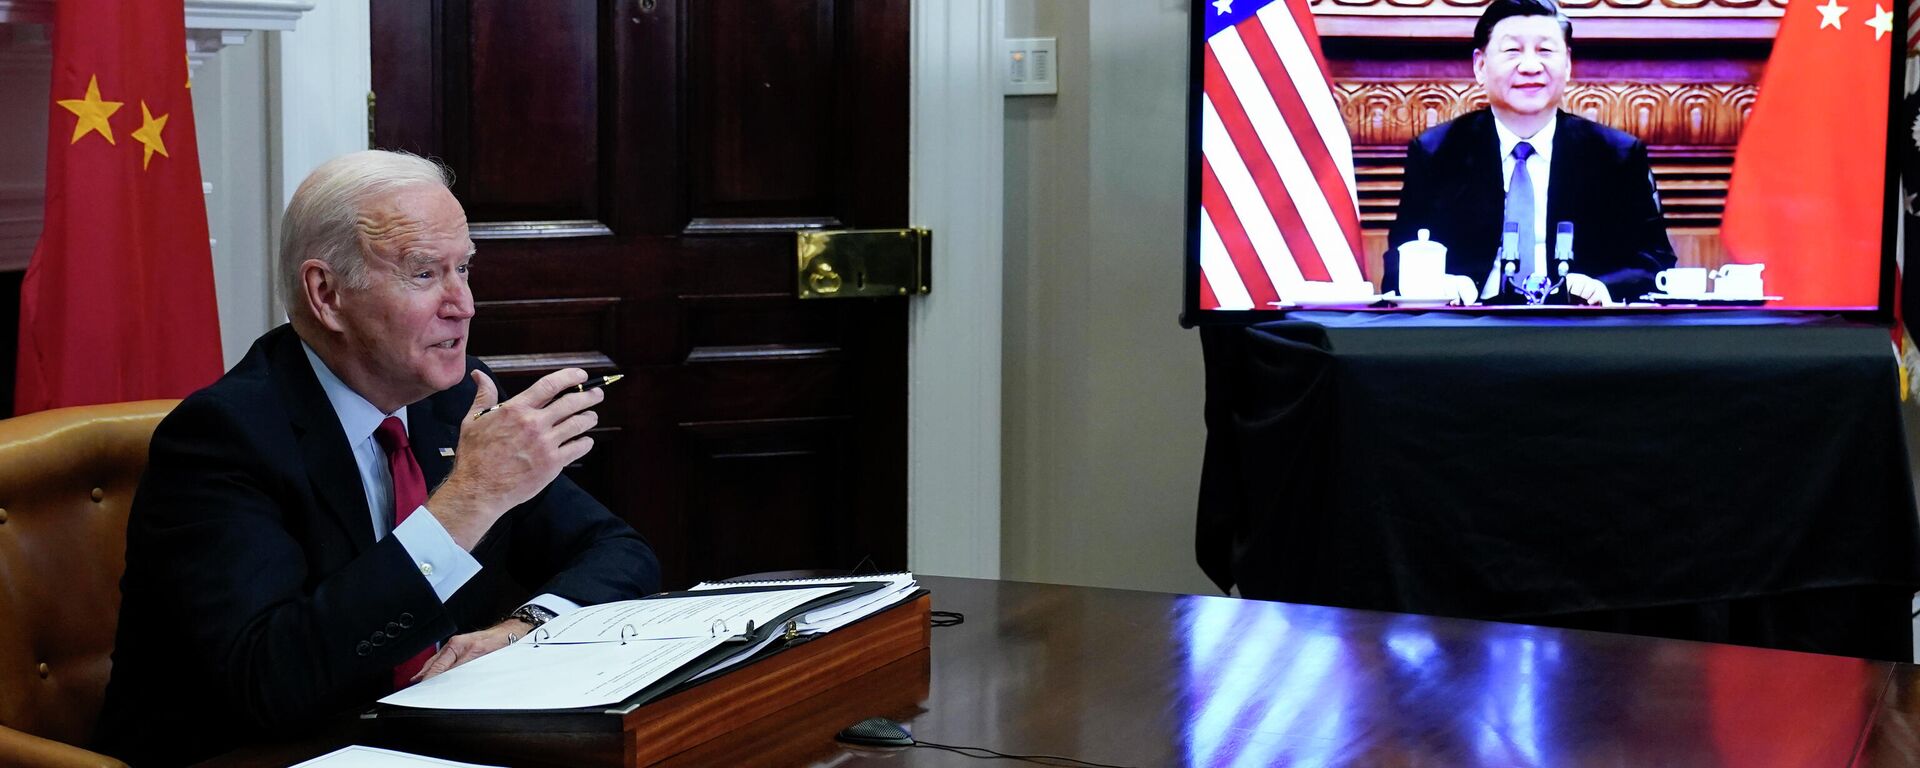 Президент Джо Байден во время видеосвязи с президентом Китая Си Цзиньпином из комнаты Рузвельта Белого дома в Вашингтоне - Sputnik Кыргызстан, 1920, 19.03.2022